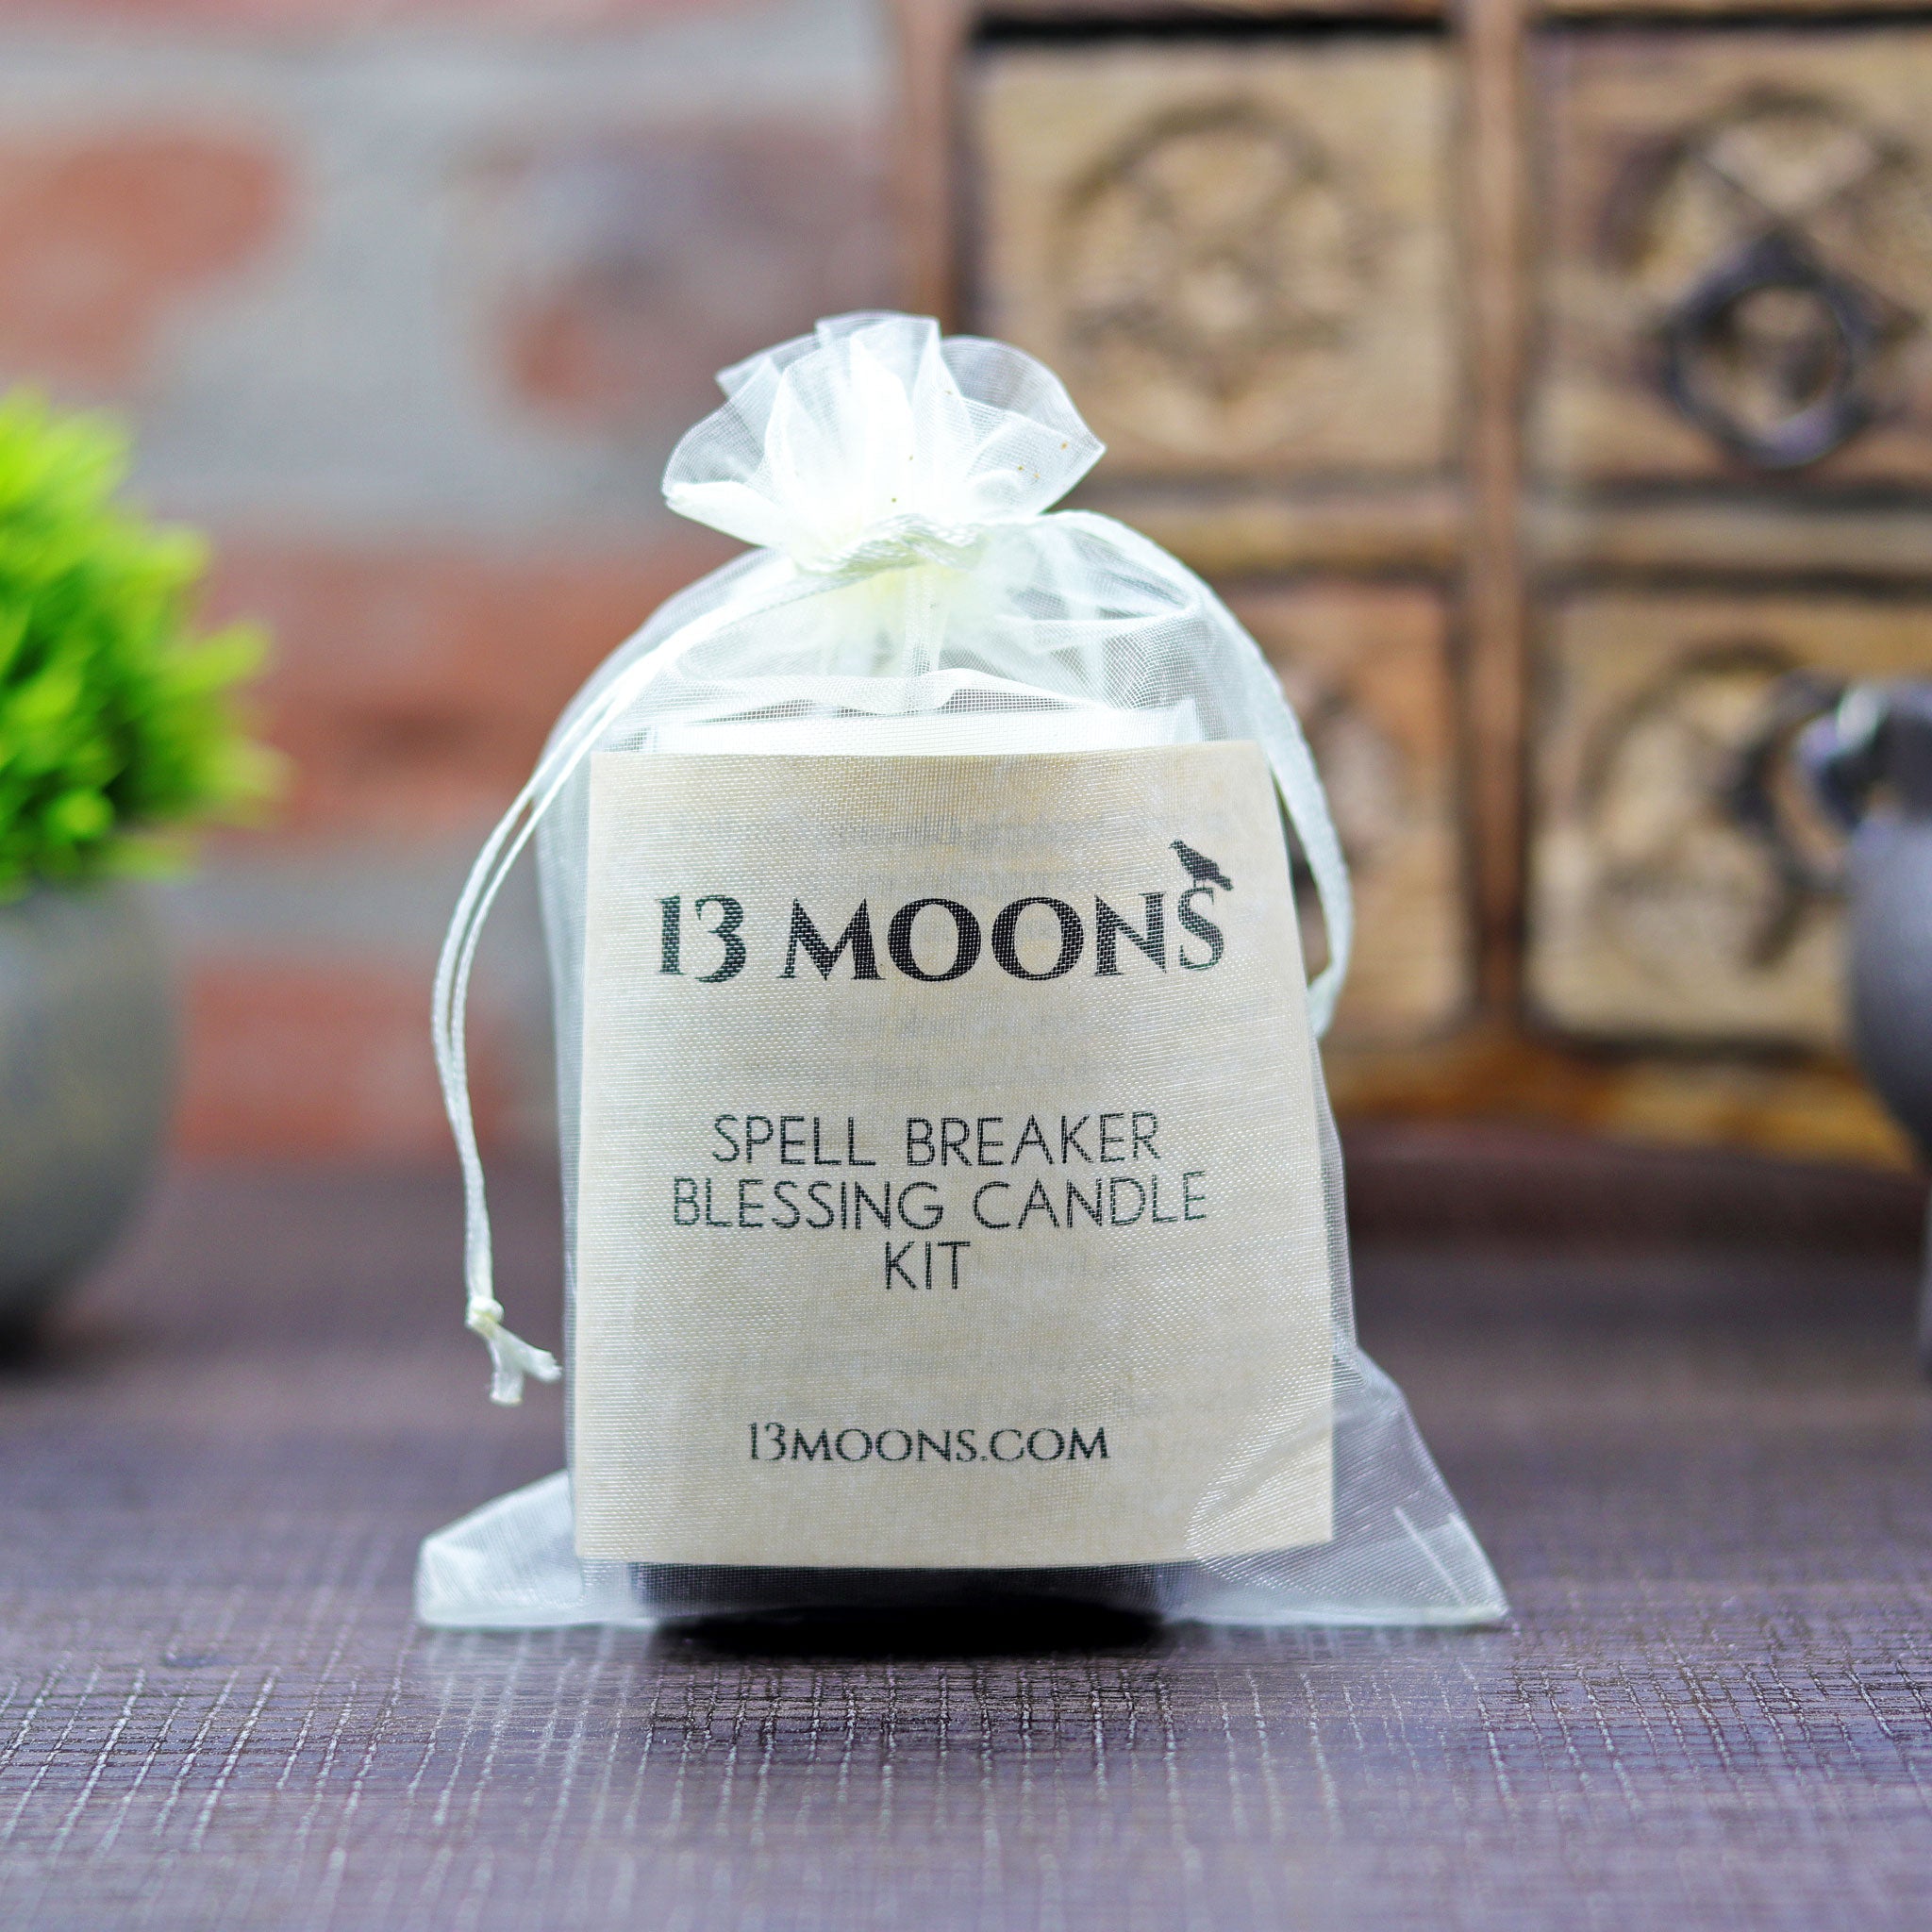 13 Moons' Spell Breaker Blessings Candle Kit